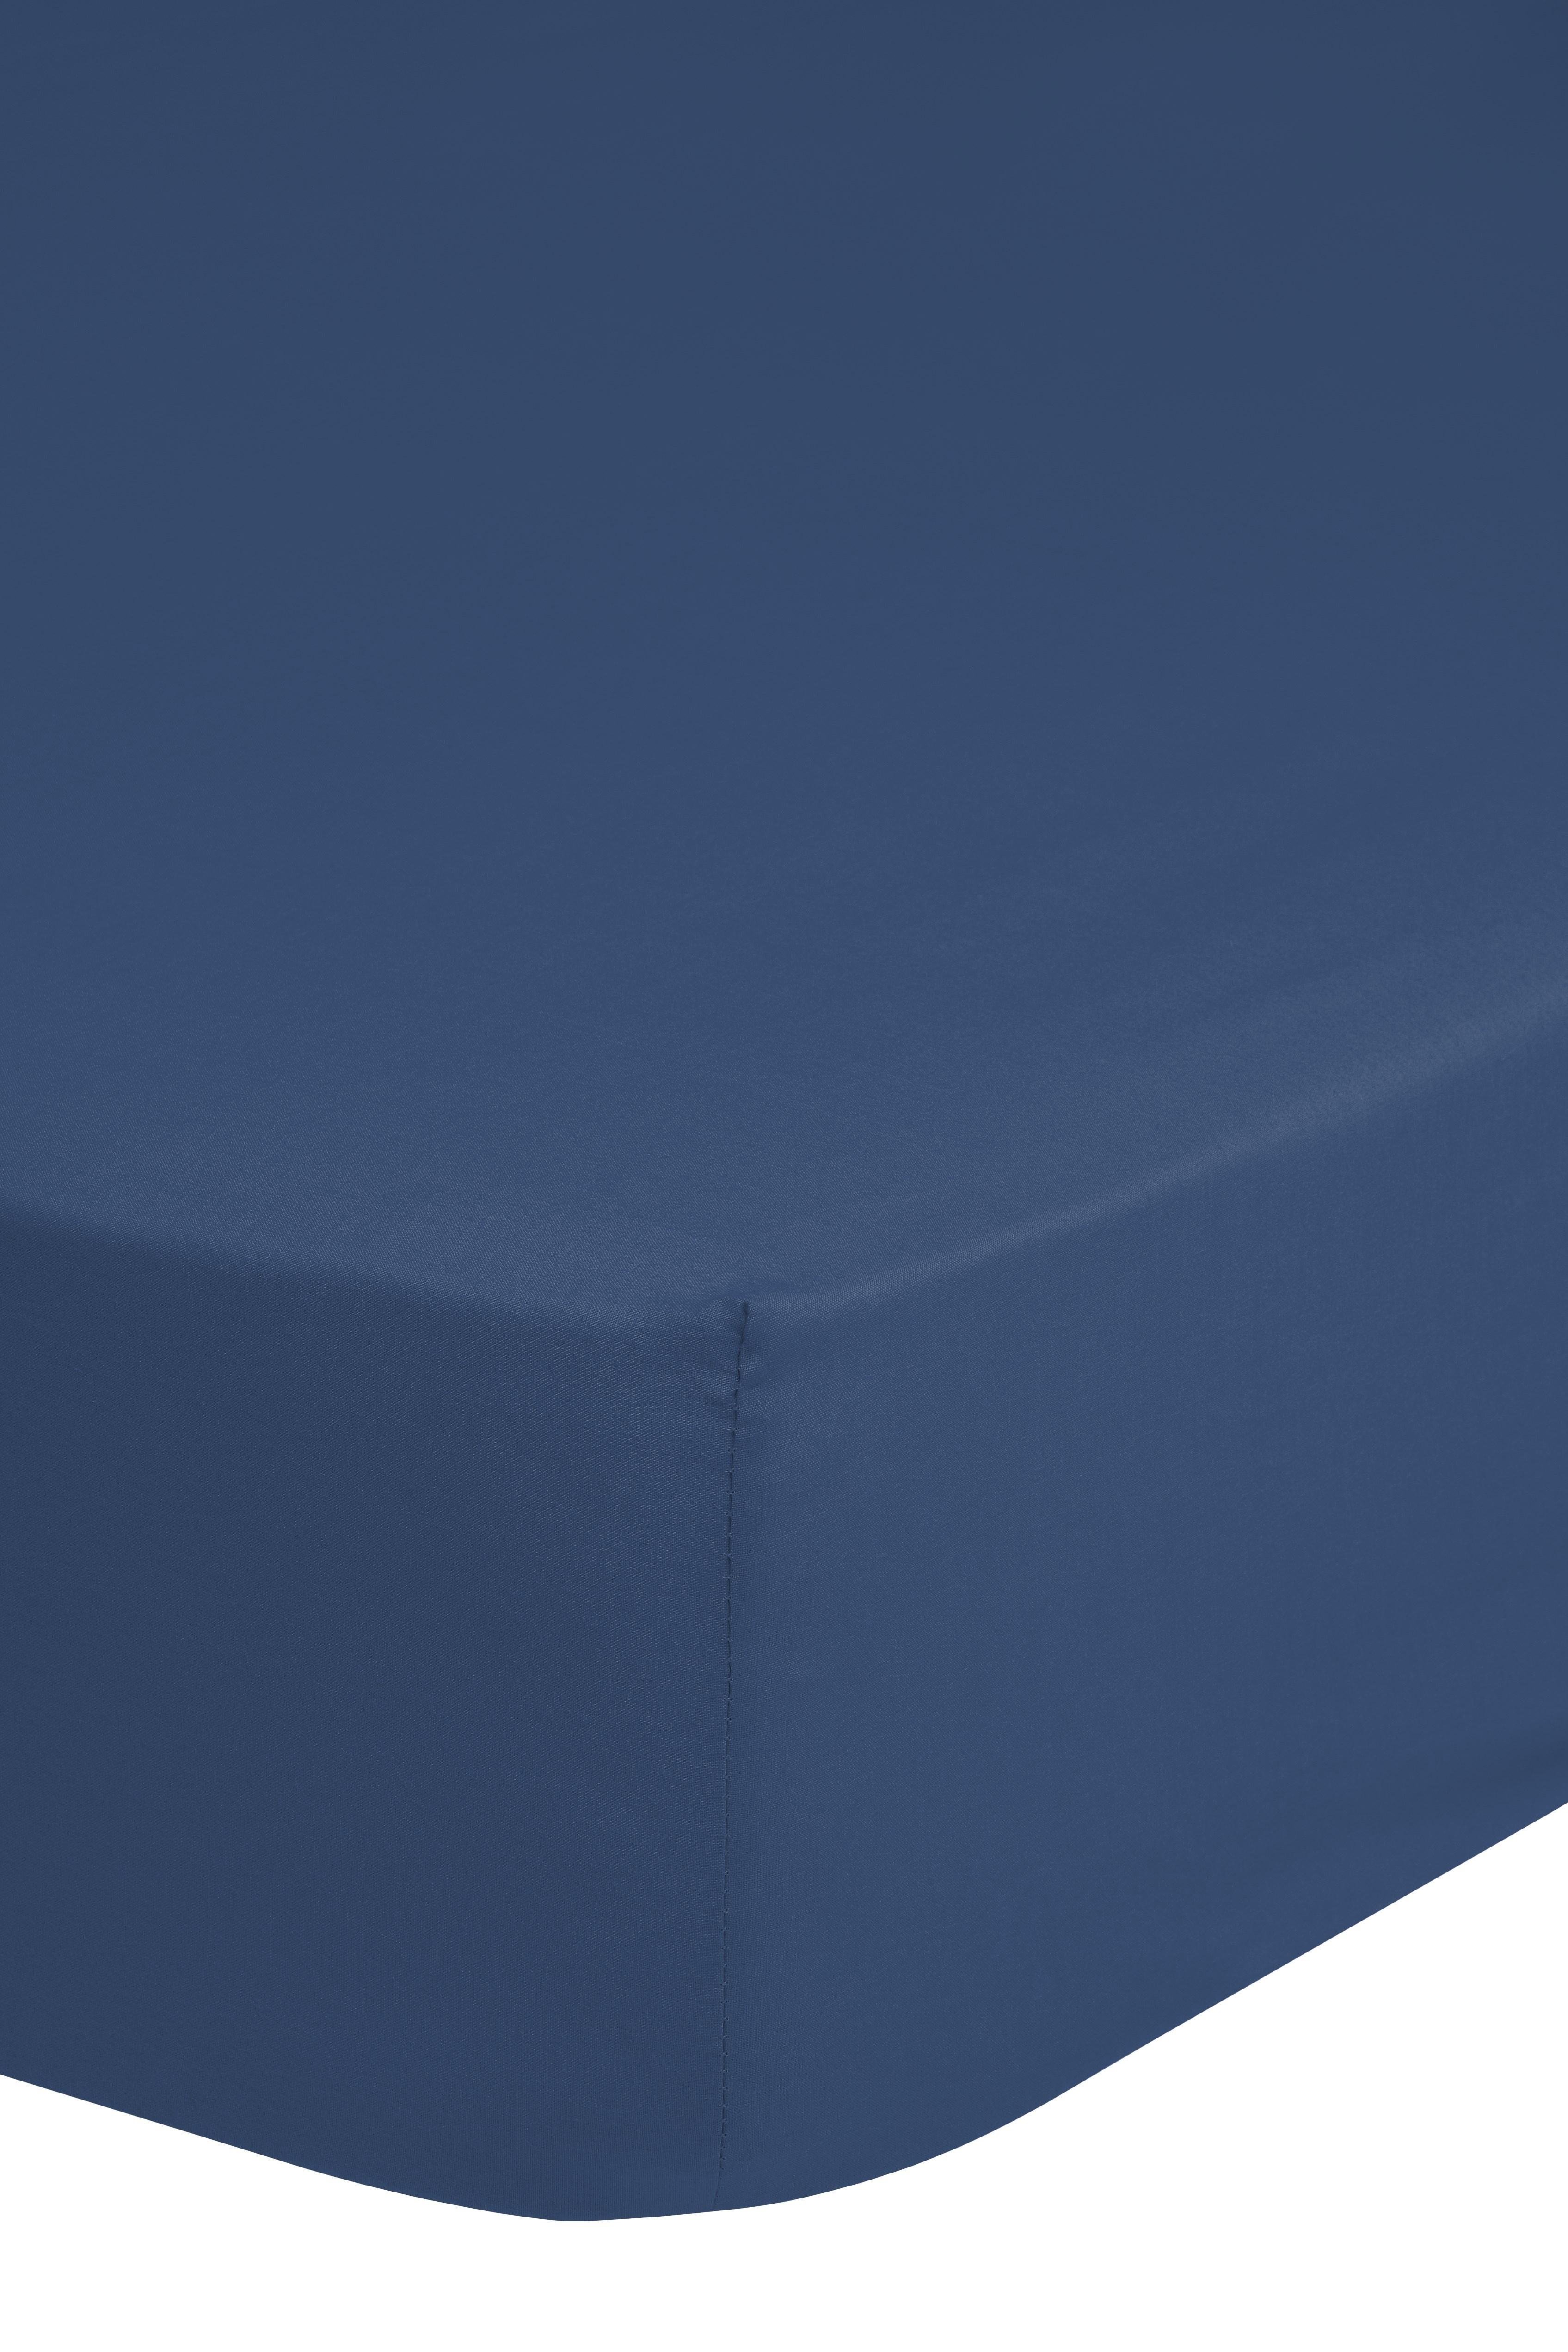 Elastické Prostěradlo Jersey Ca. 140x200cm - tmavě modrá, Basics, textil (140/200cm) - MID.YOU